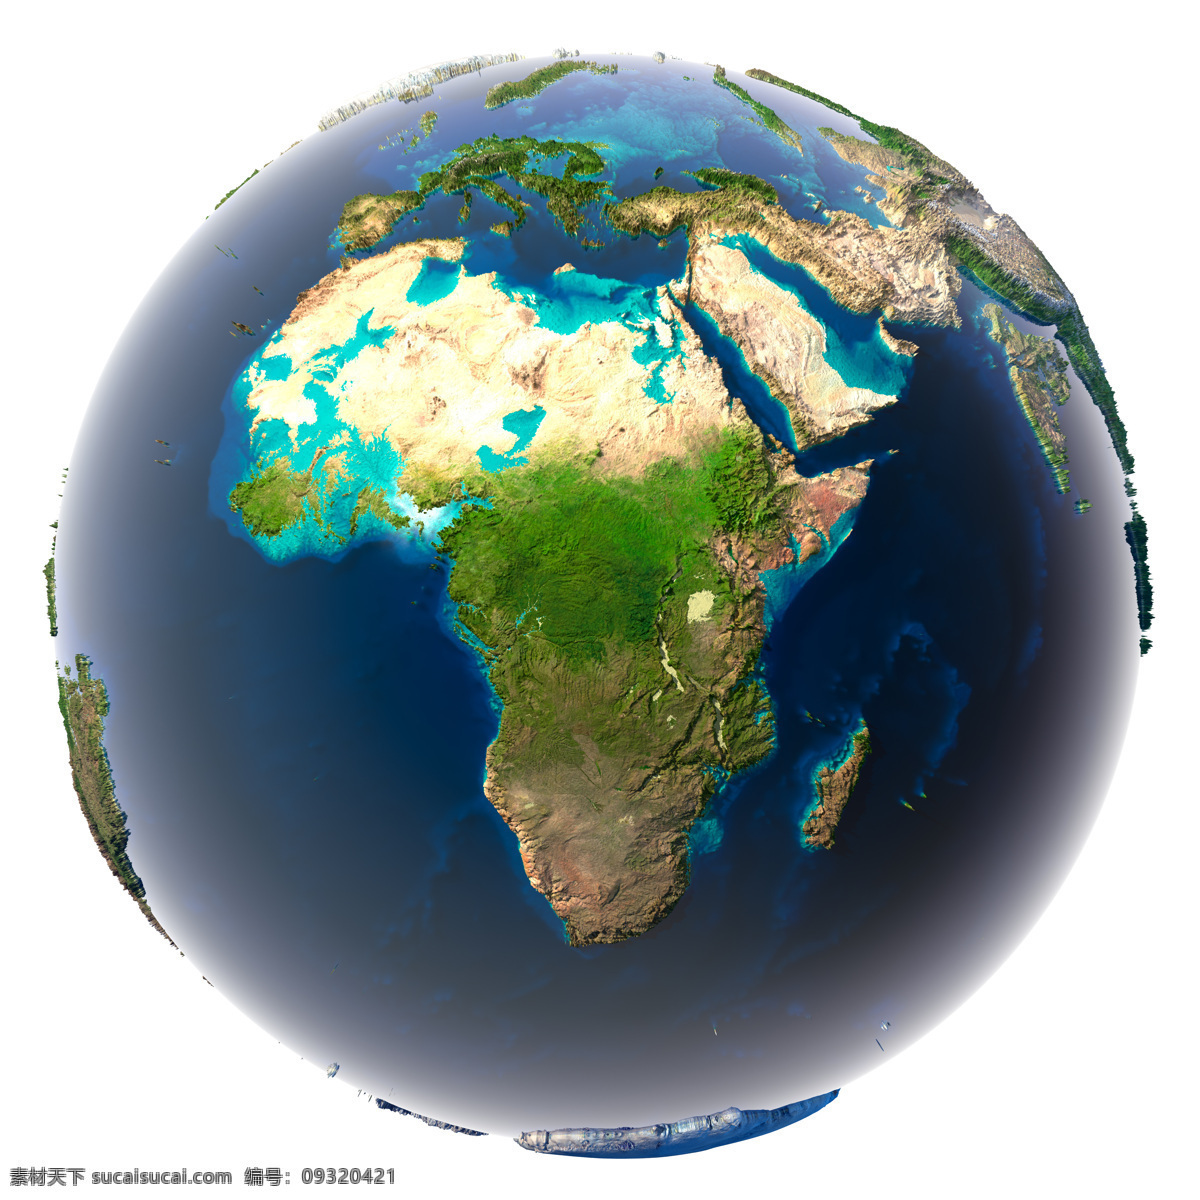 蓝色地球摄影 地球模型 地球 地球素材 地球背景 立体图案 星球 地图 环保 创意图片 其他类别 环境家居 白色